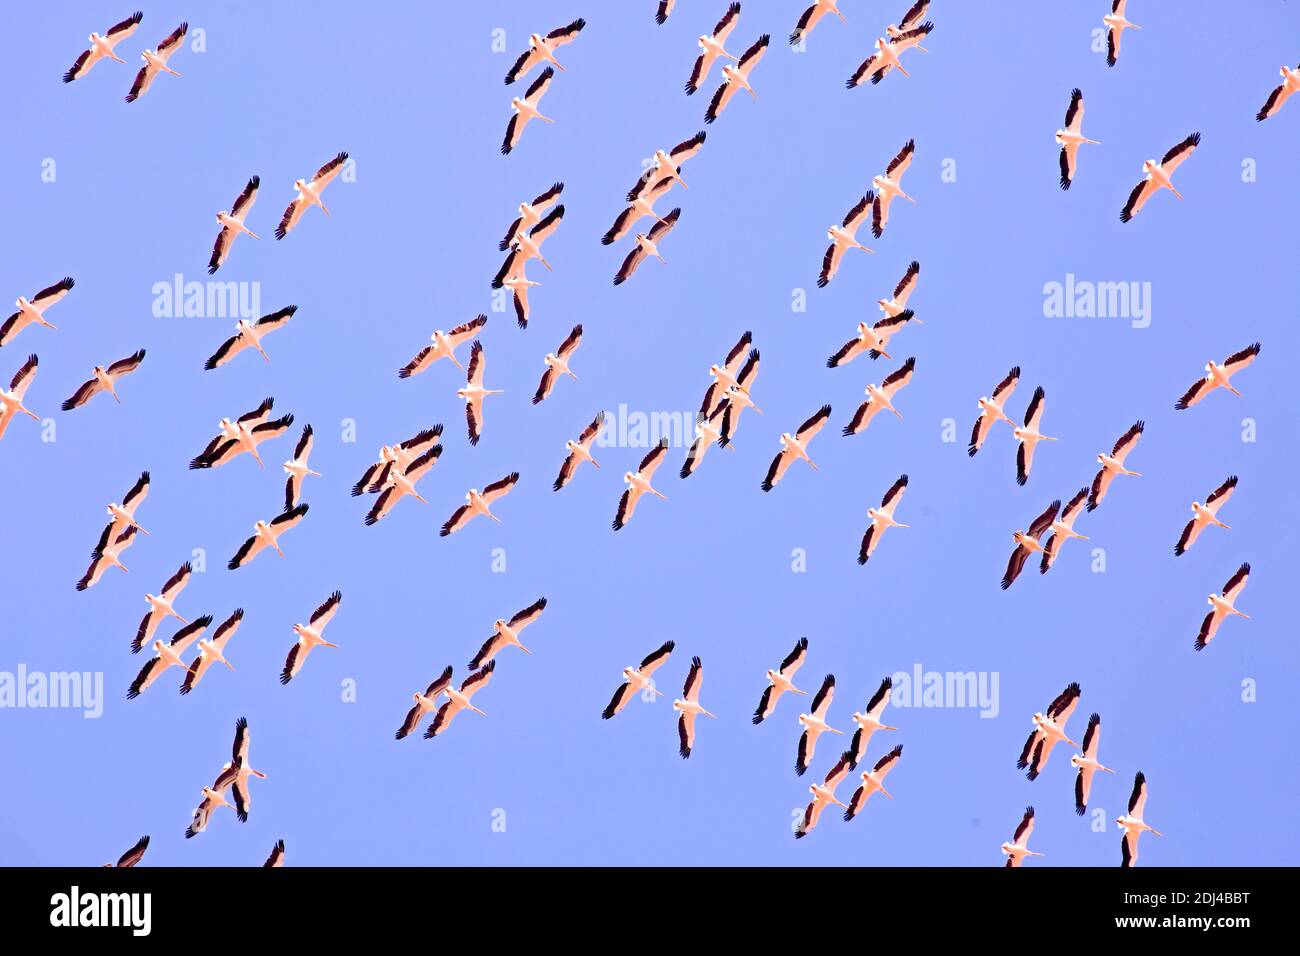 Un gran rebaño de pelícanos en vuelo sobre un fondo azul del cielo. Estas aves son perjudiciales para las pesquerías locales. Fotografiado en la Reserva Natural de Ein Afek, Foto de stock